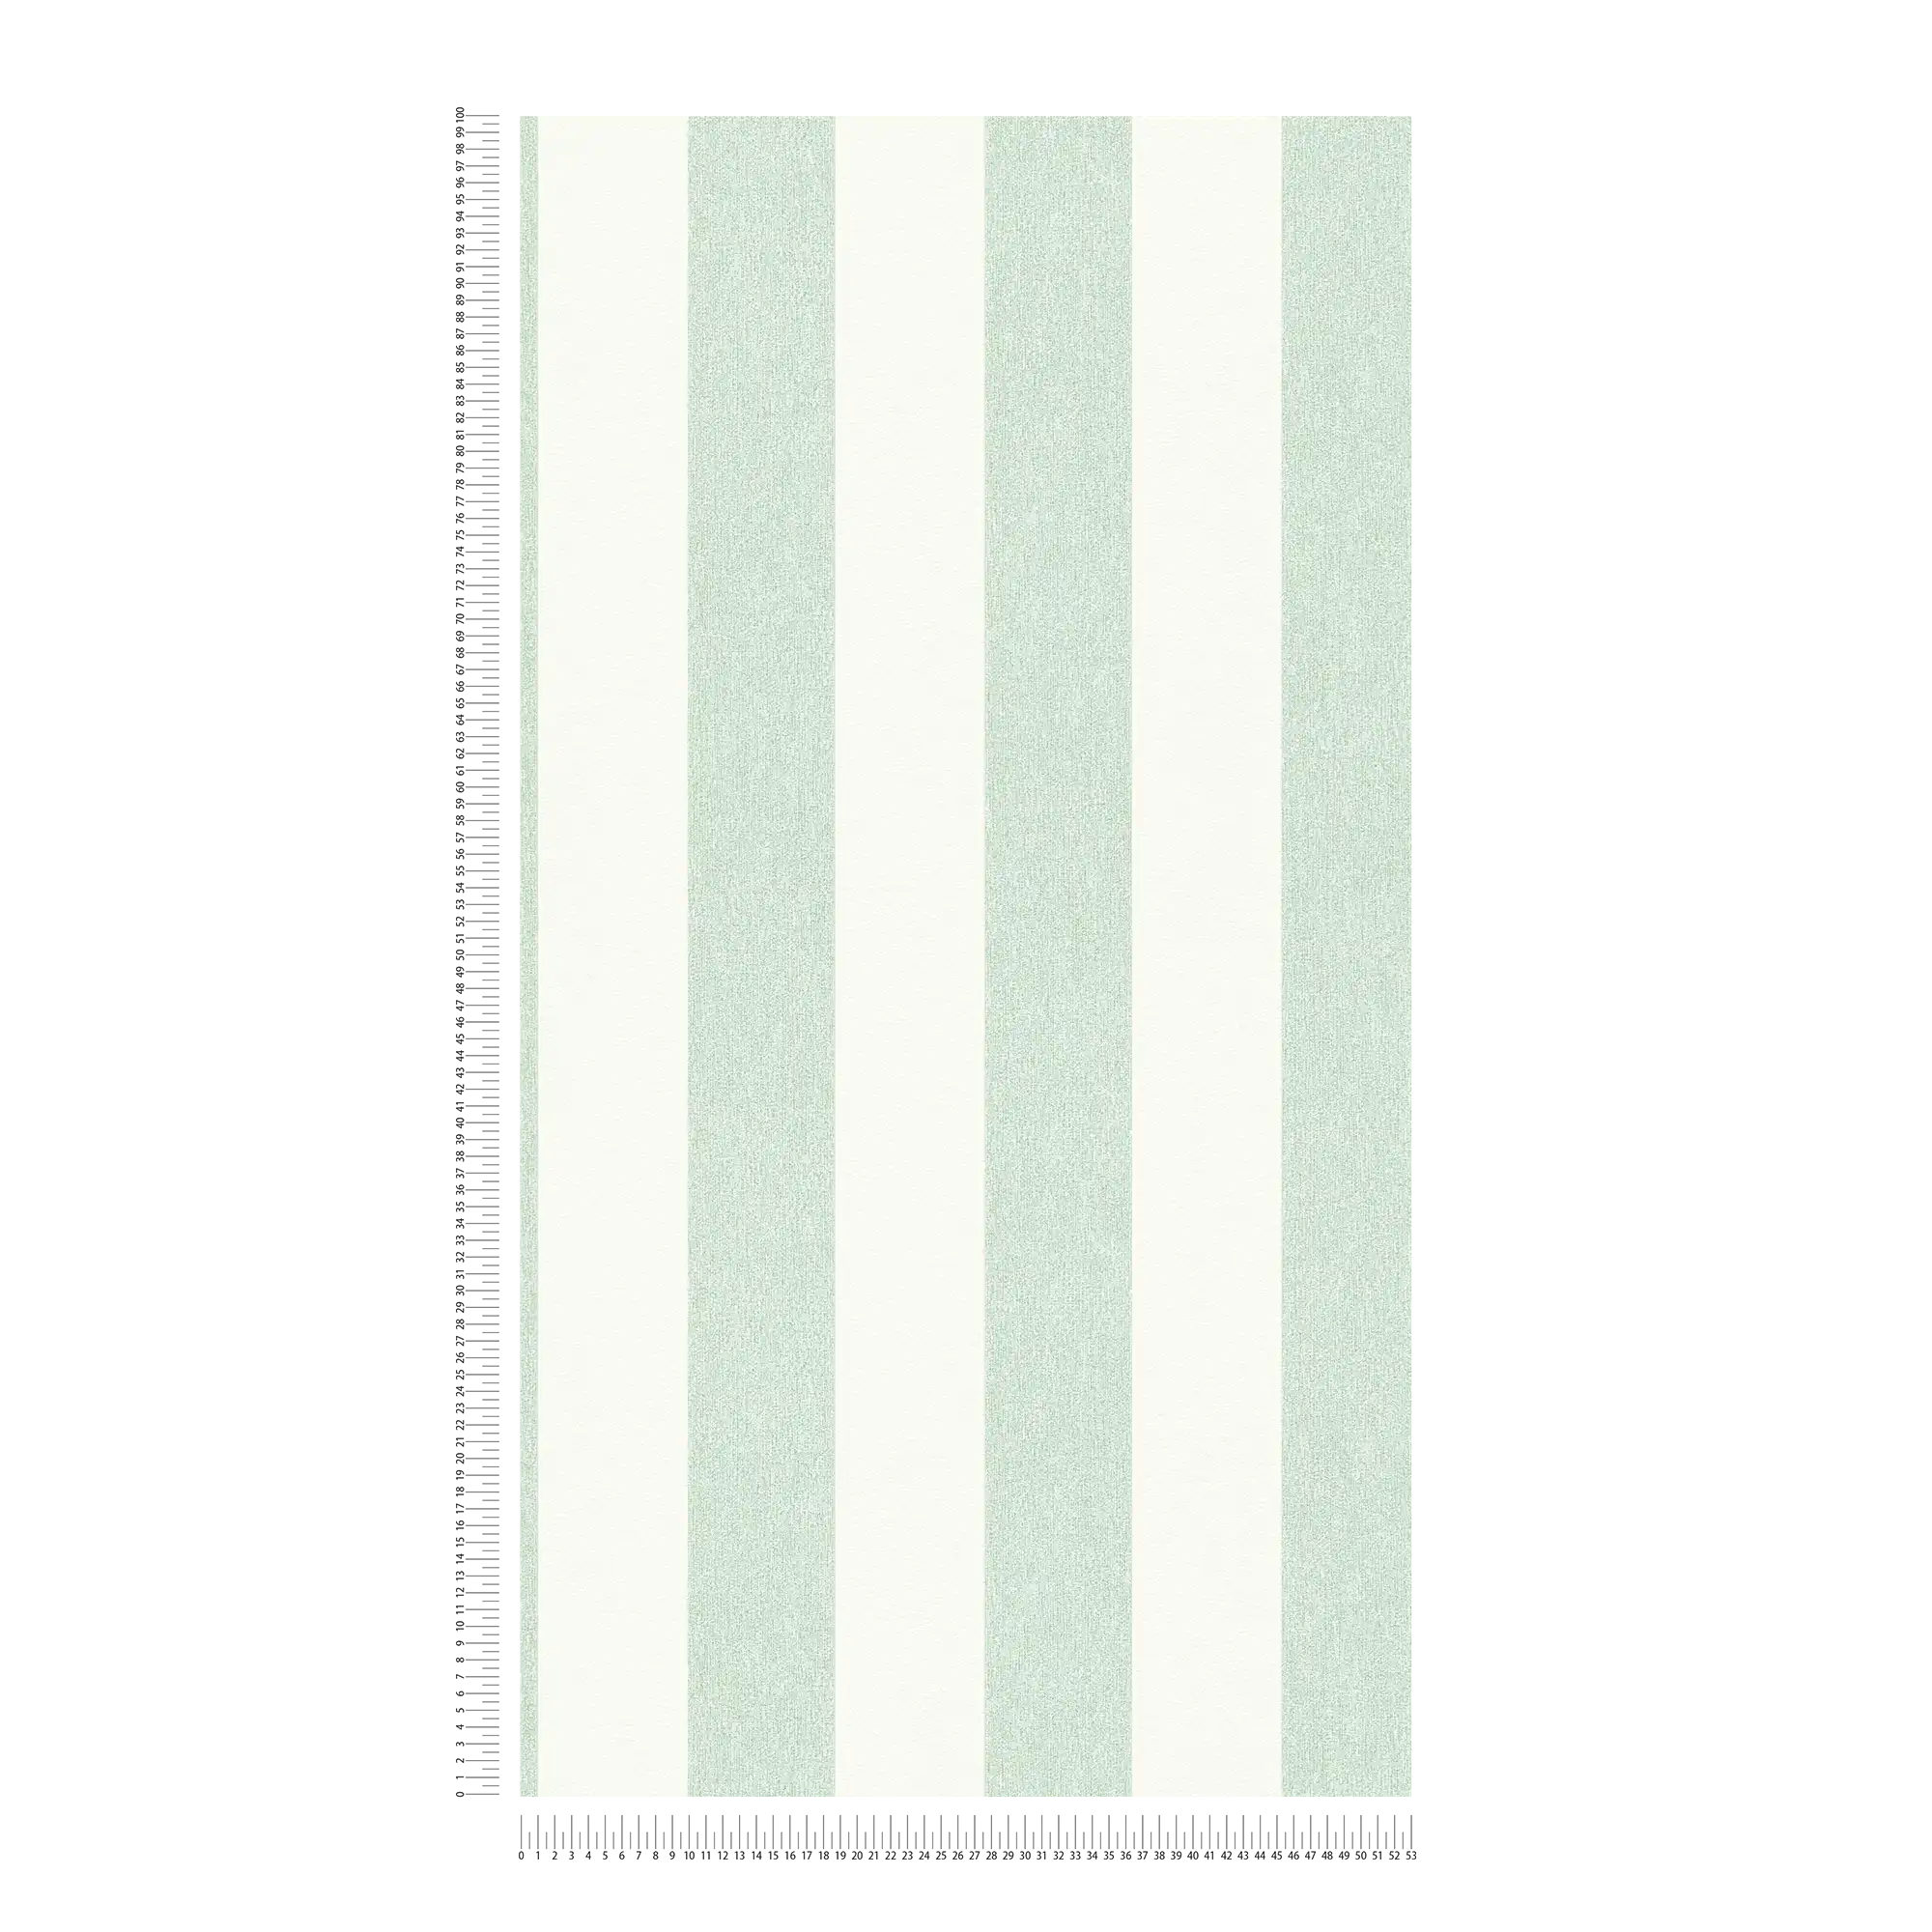             Vliesbehang met strepen in structuurlook & mat - groen, wit
        